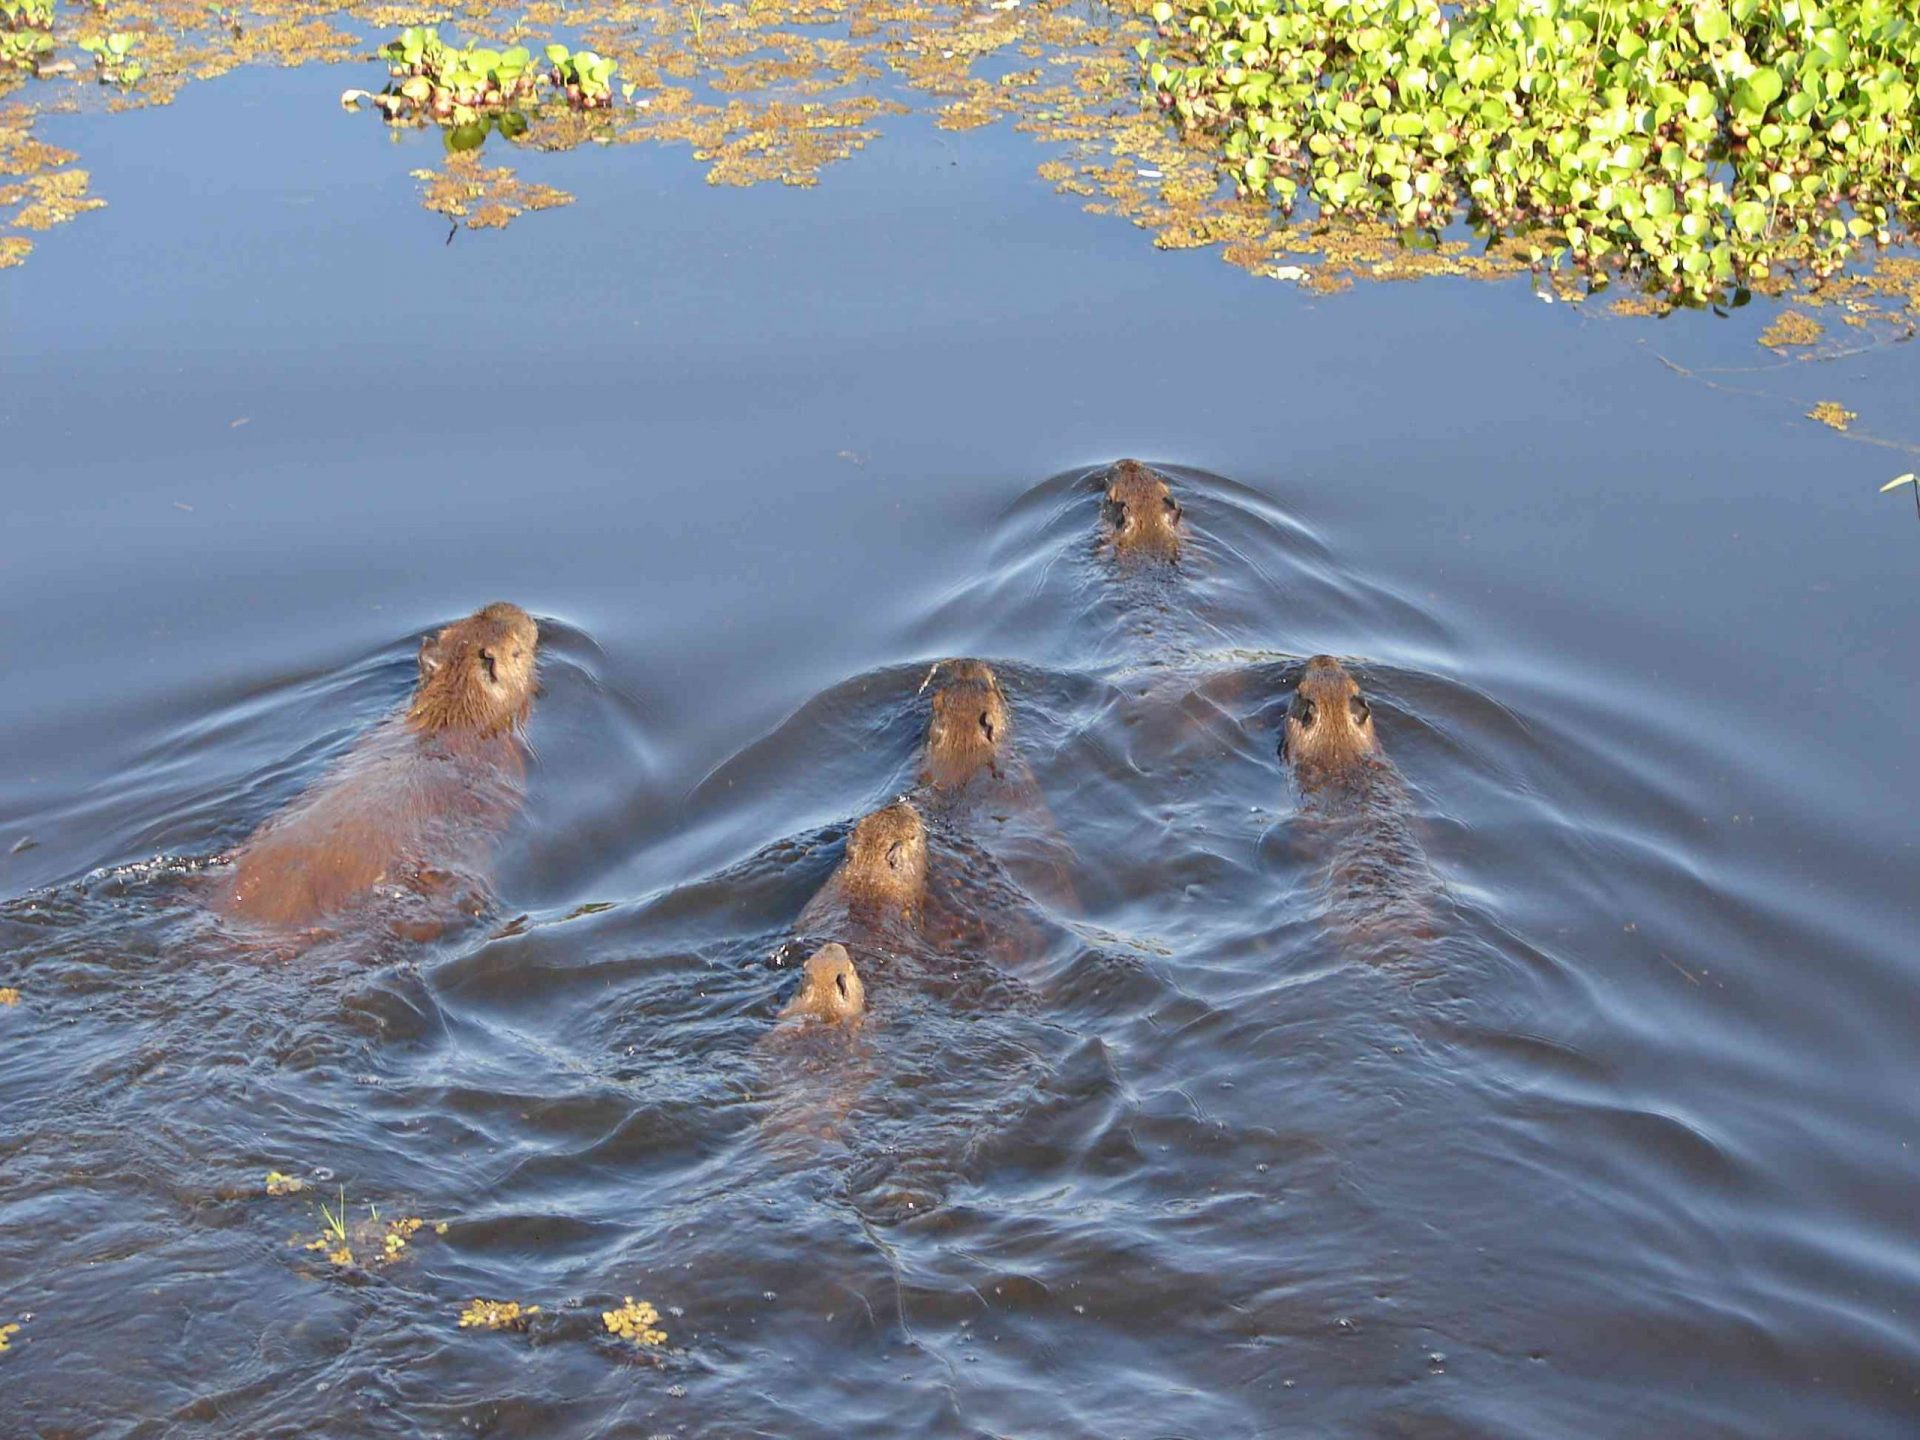 familia de cinco crías de capibara y un adulto nadando en el agua cerca de plantas verdes en la orilla